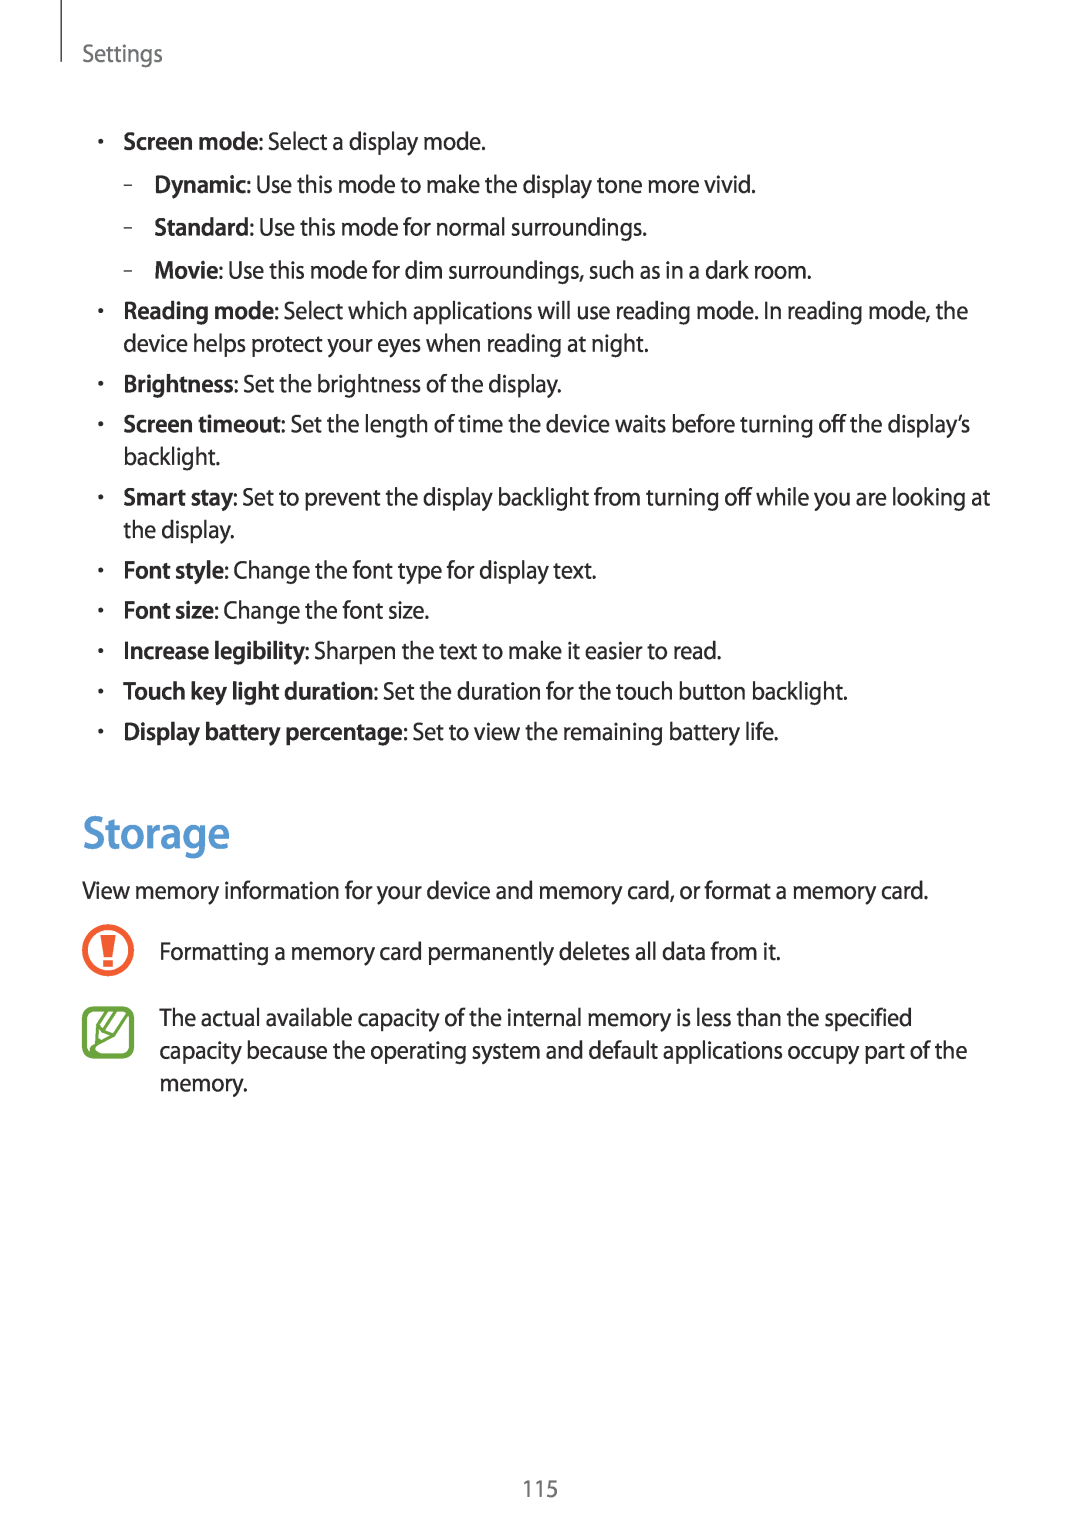 Samsung GT-N5100 user manual Storage, Settings 